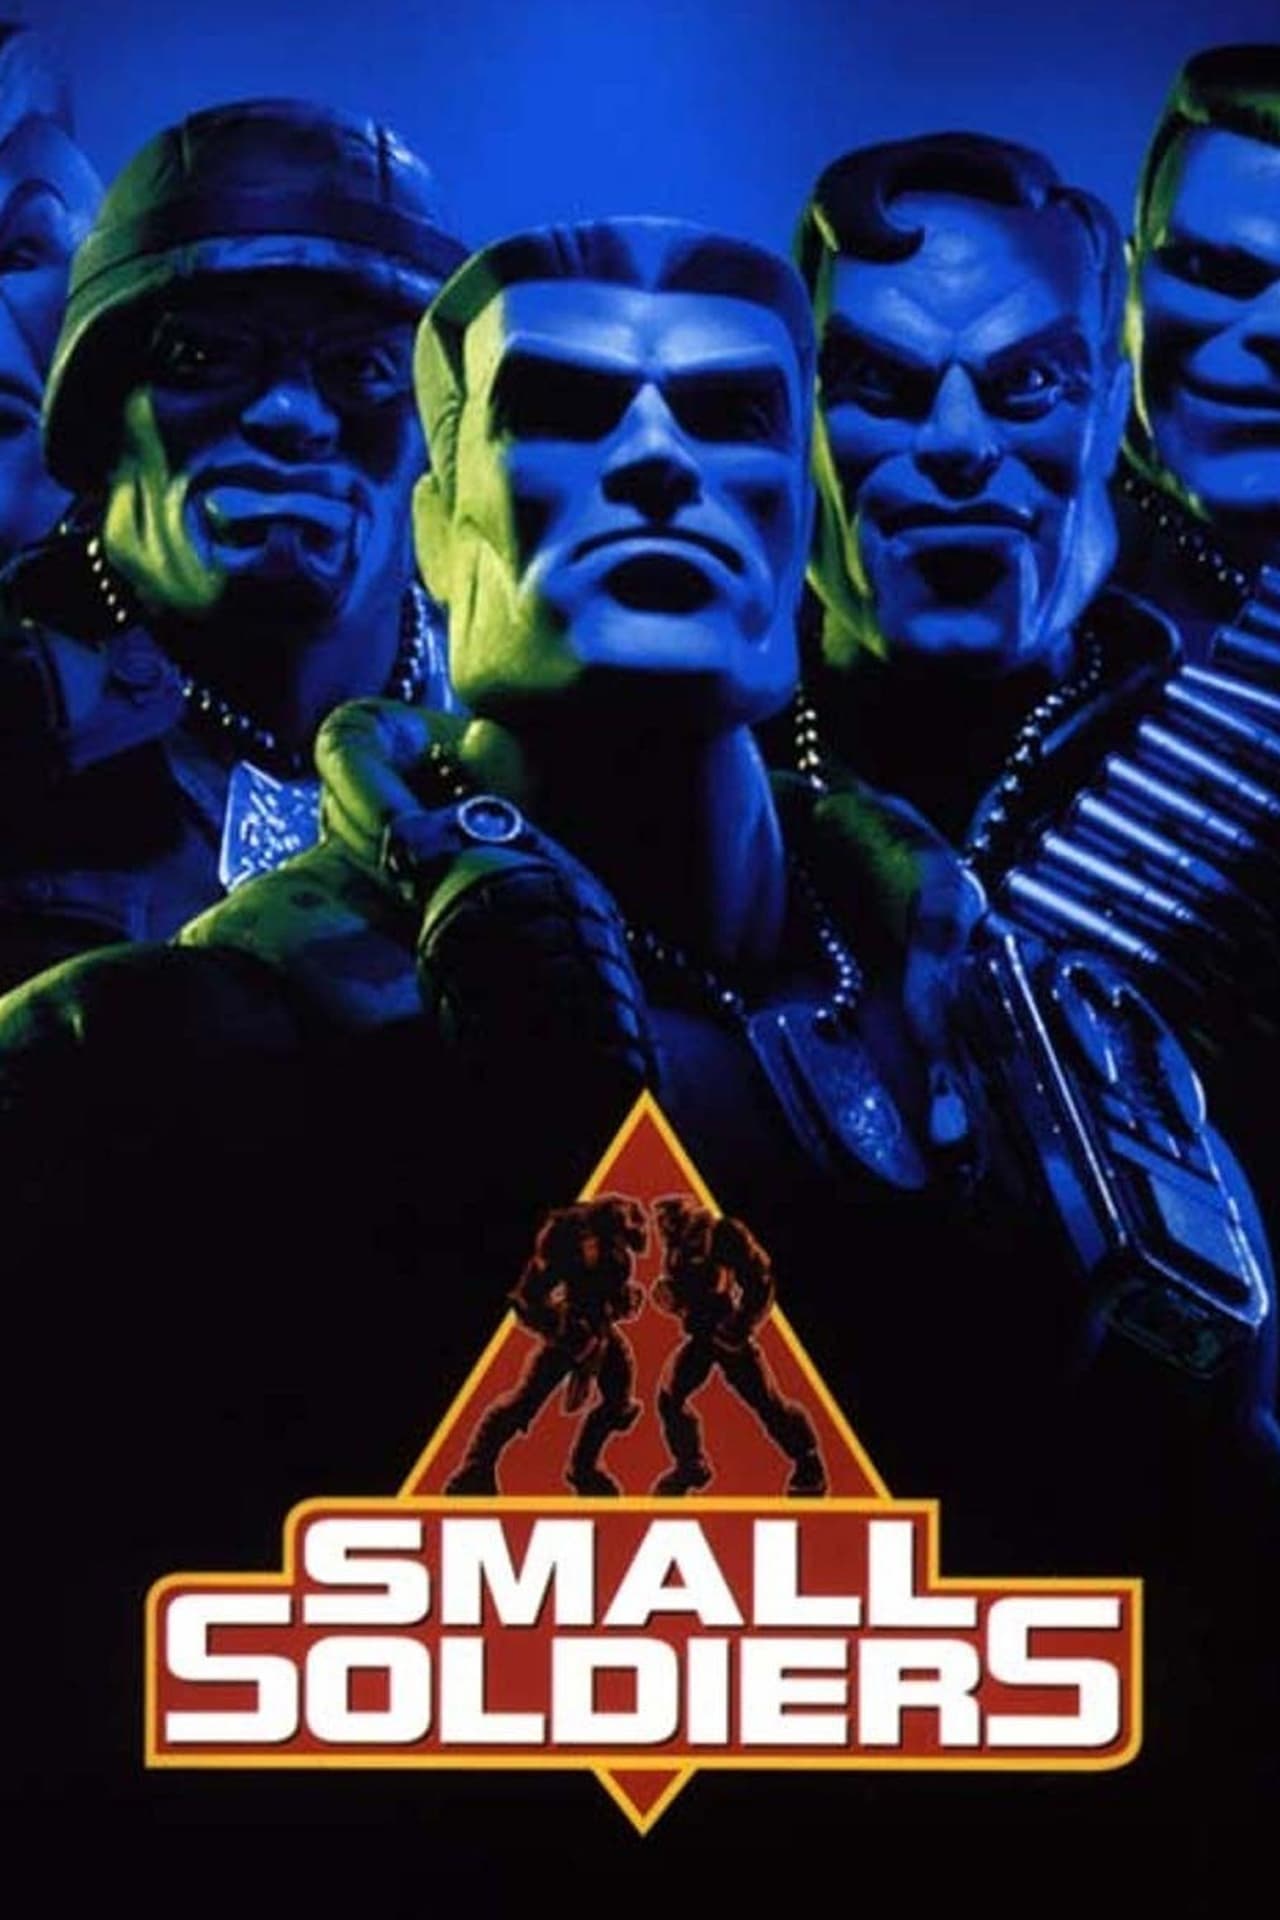 Plakat von "Small Soldiers"